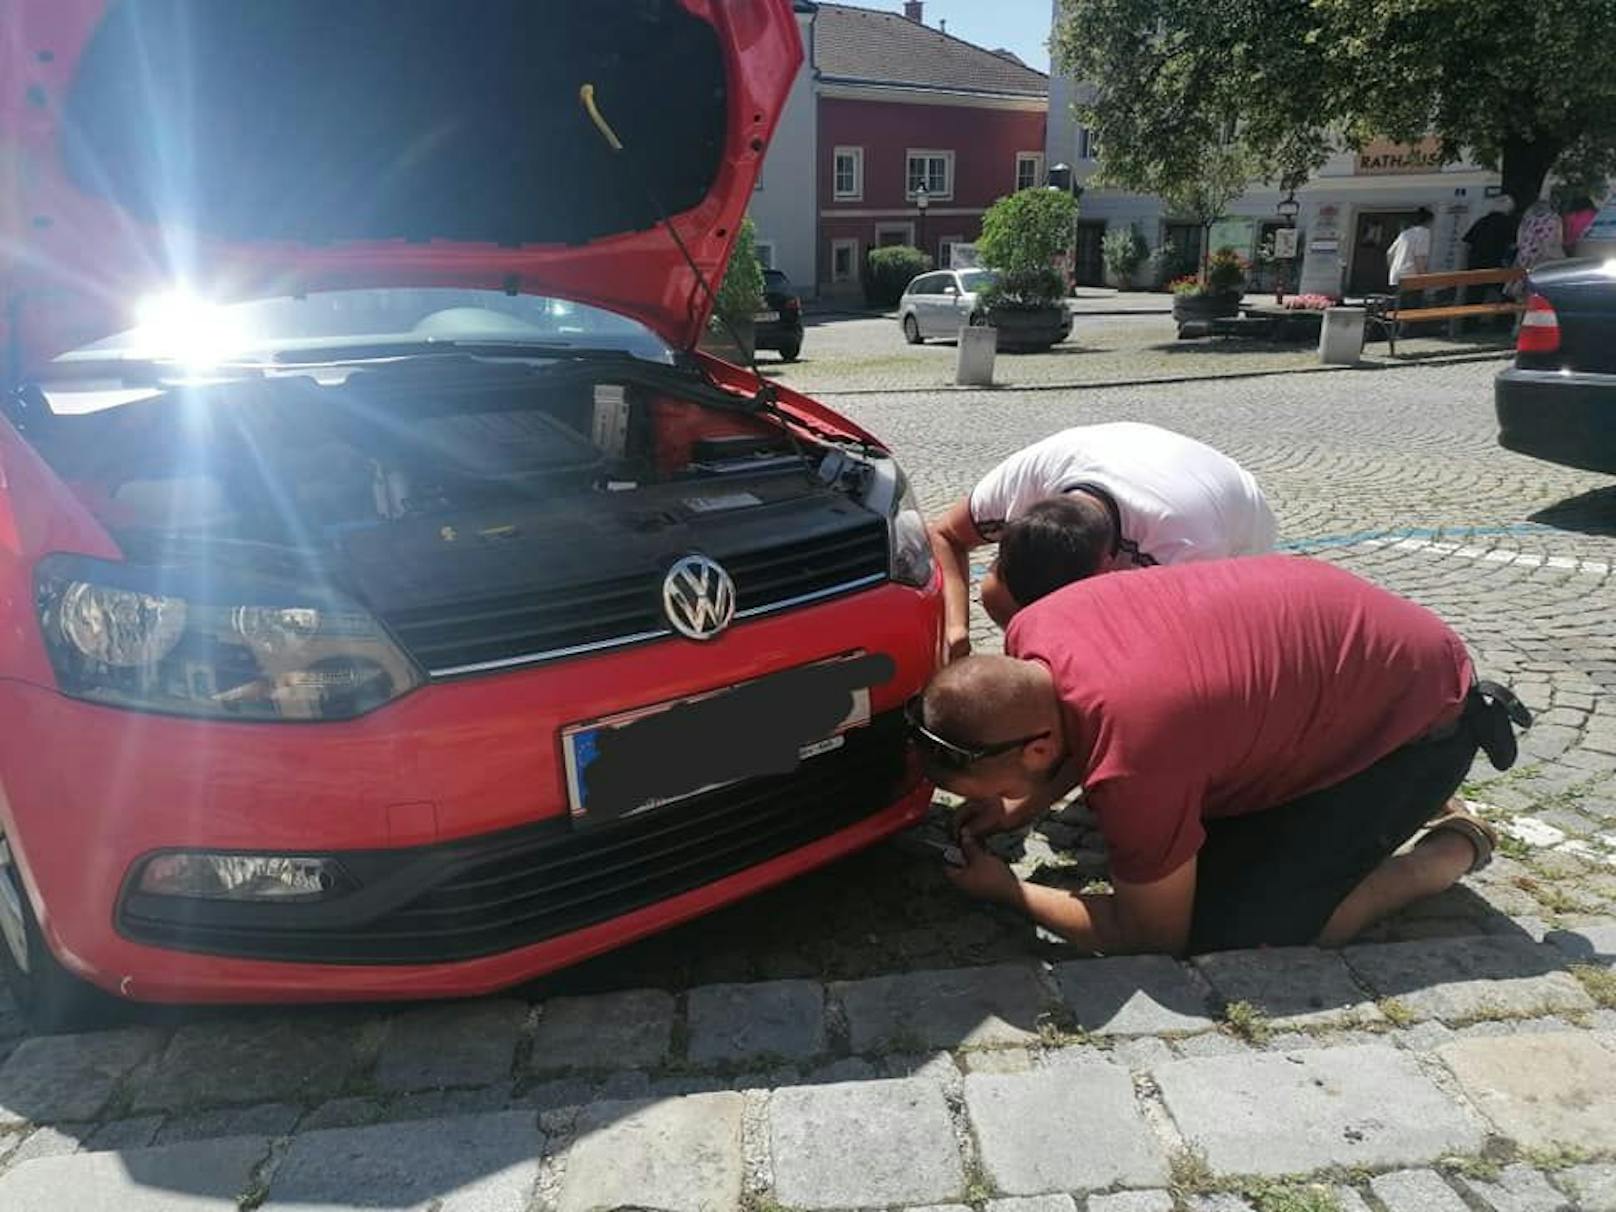 Das Babykatzerl war im Motorraum des VW versteckt.